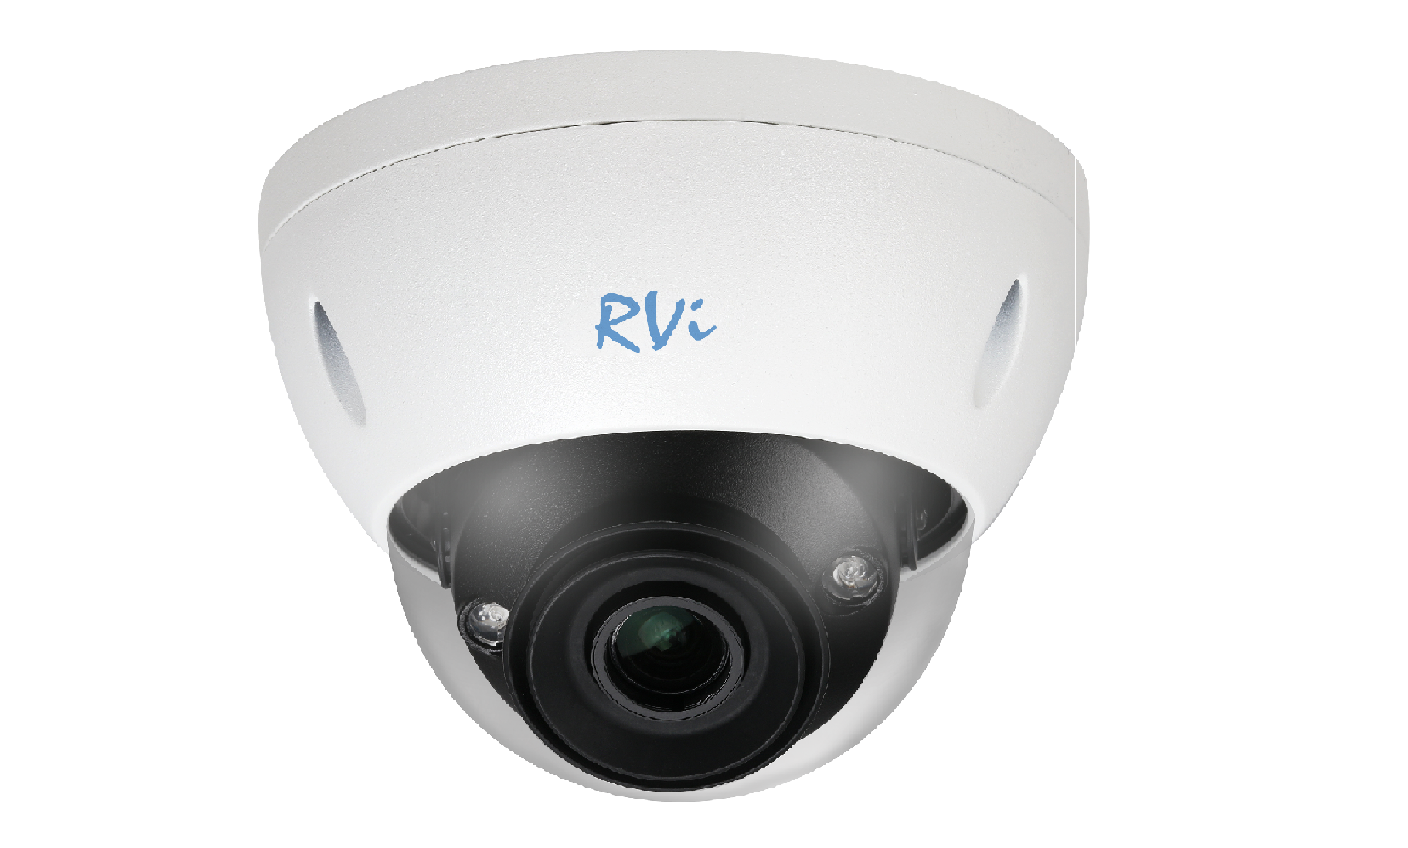 RVi-1NCD4069 (8-32) white - купить в интернет магазине с доставкой, цены, описание, характеристики, отзывы